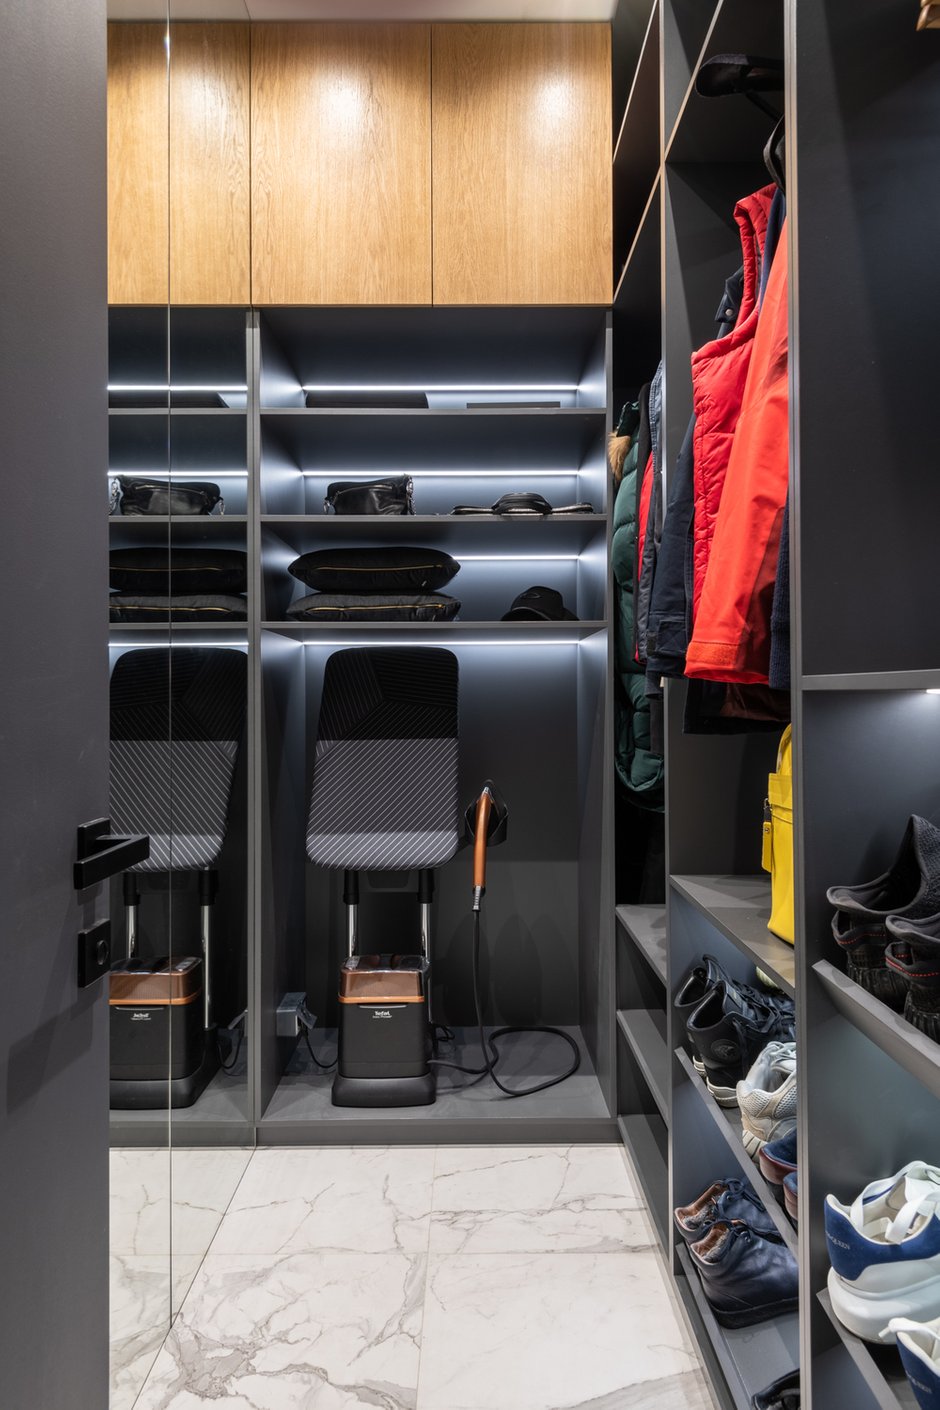 В каждой комнате спроектировали встроенные шкафы с выдвижными ящиками и штангой. Есть также отдельная гардеробная для верхней одежды и обуви при входе в квартиру.